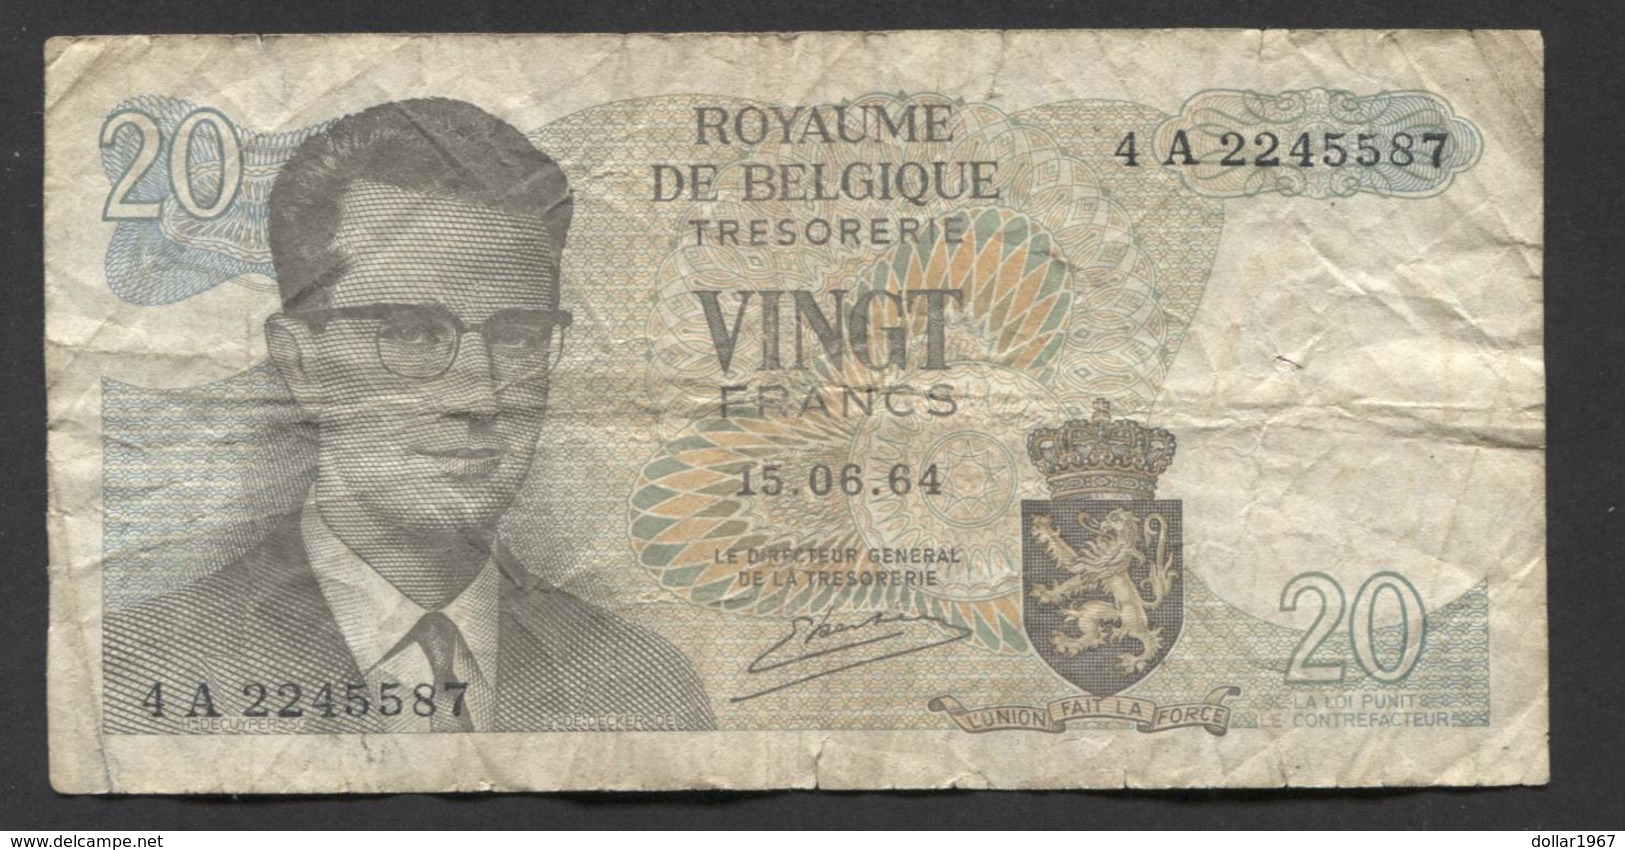 België Belgique Belgium 15 06 1964 -  20 Francs Atomium Baudouin. 4 A 2245587 - 20 Franchi